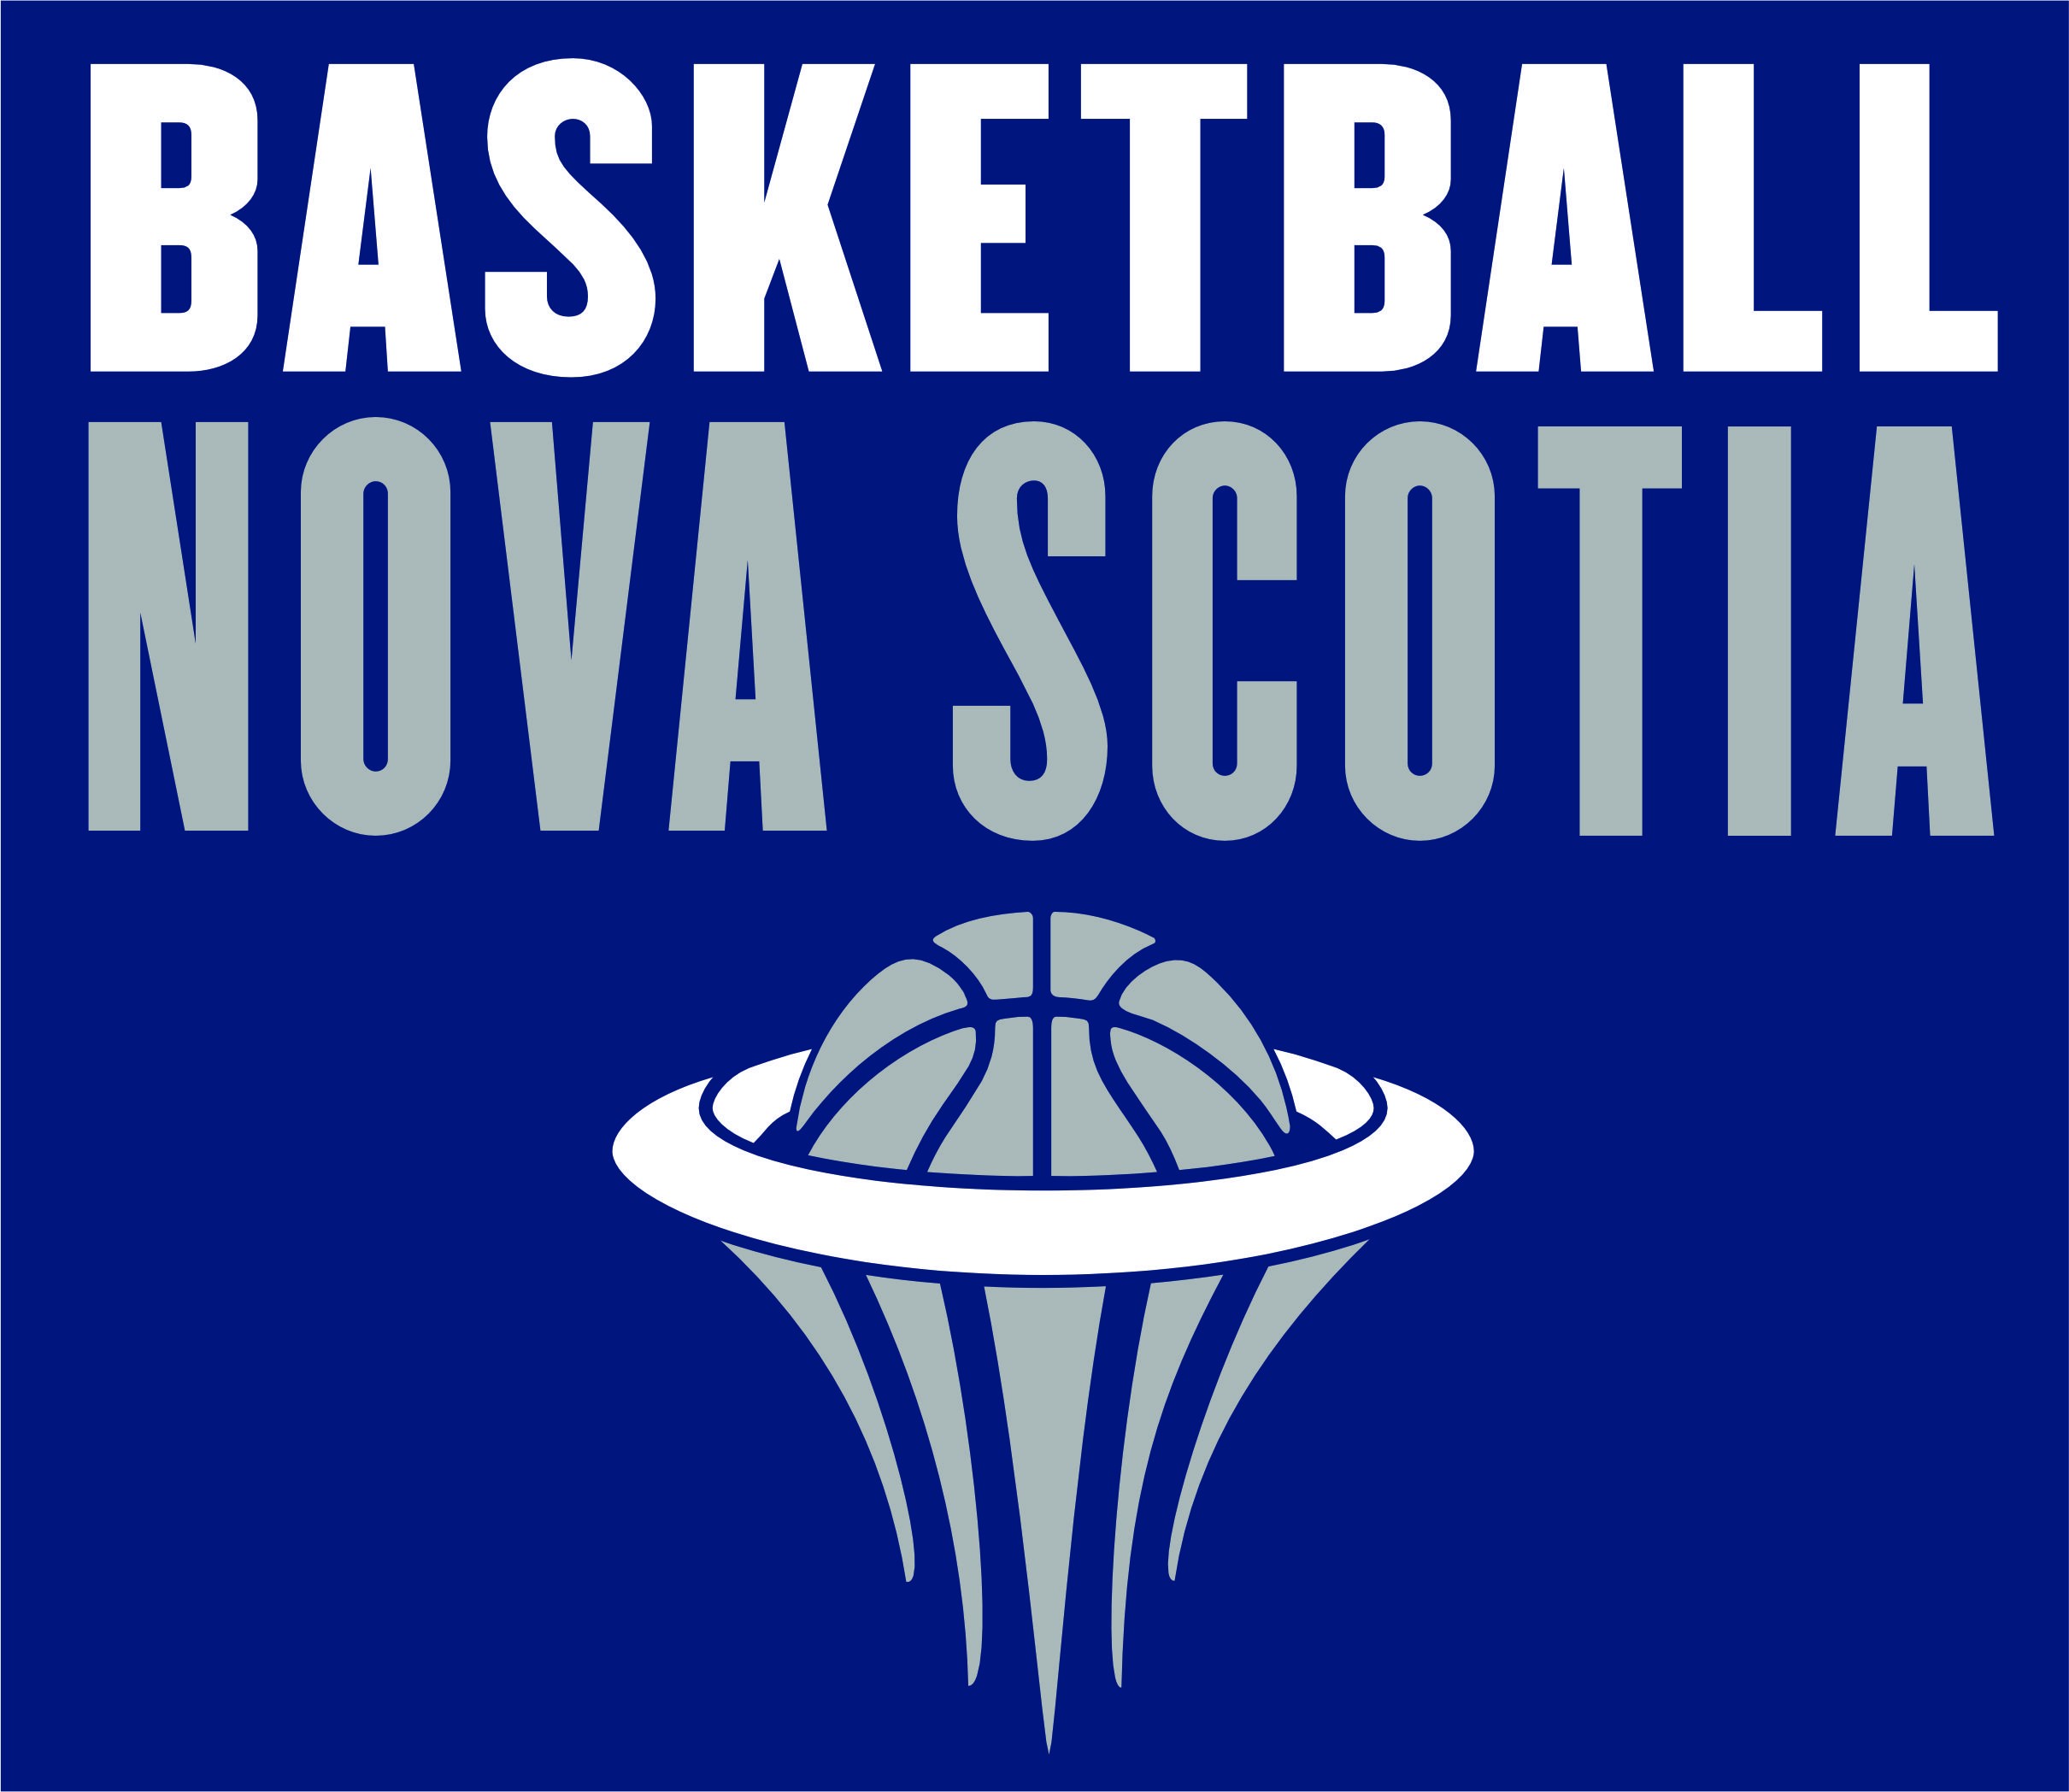 Basketball Nova Scotia